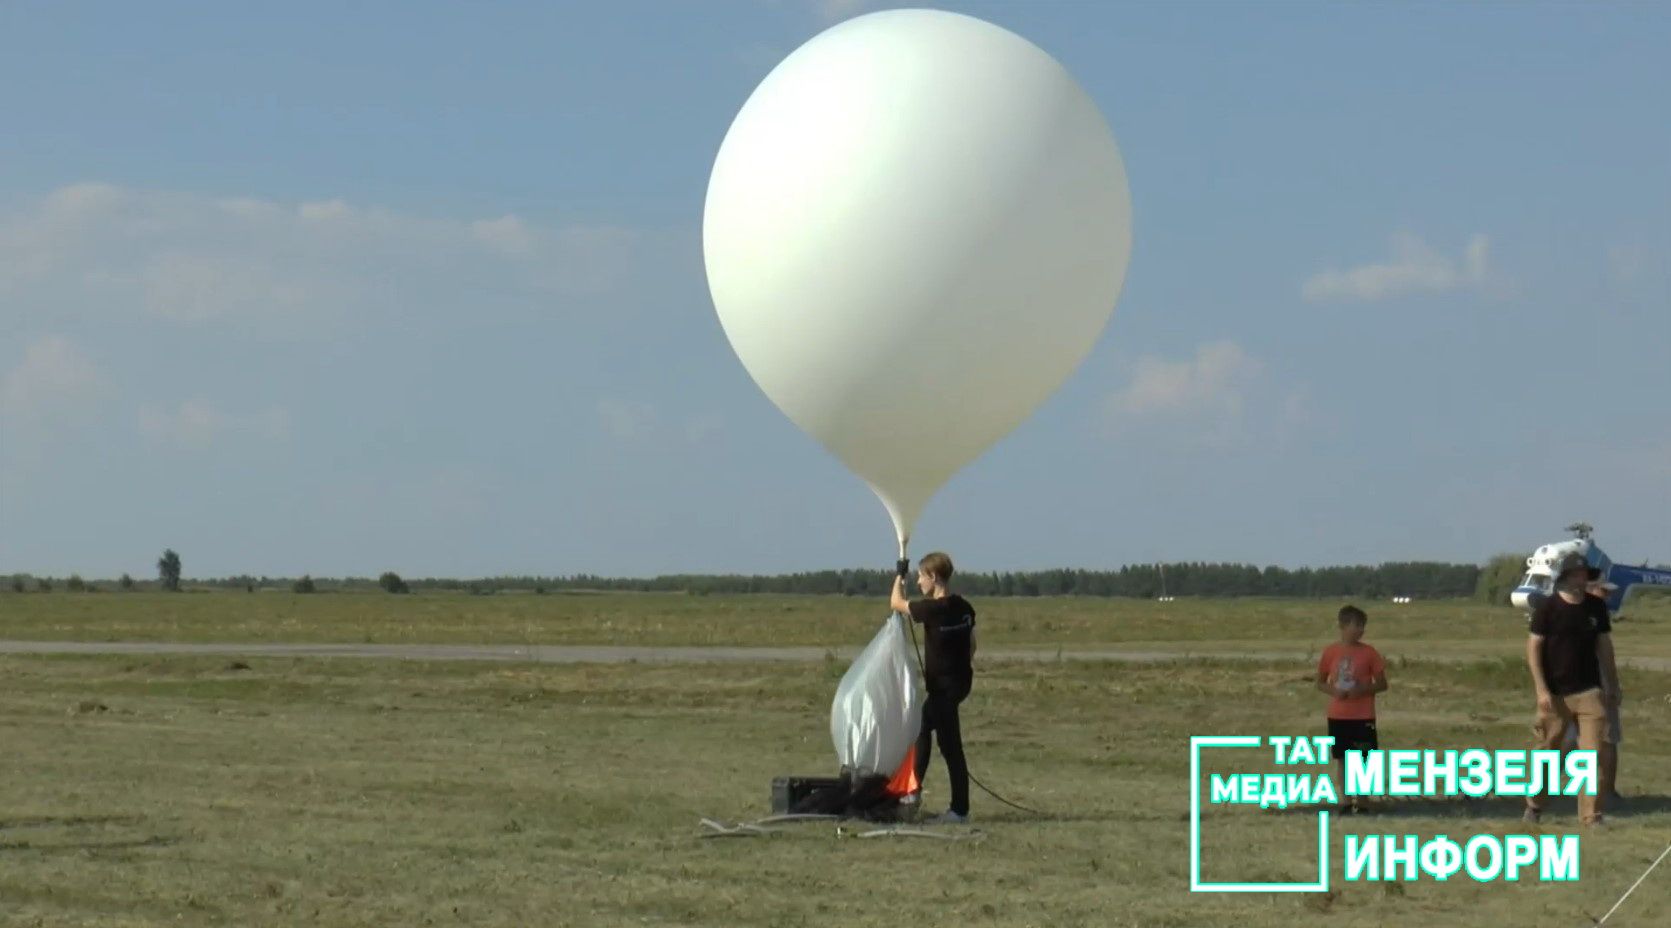 Первый спутник для Татарстана запущен в стратосферу из Мензелинска